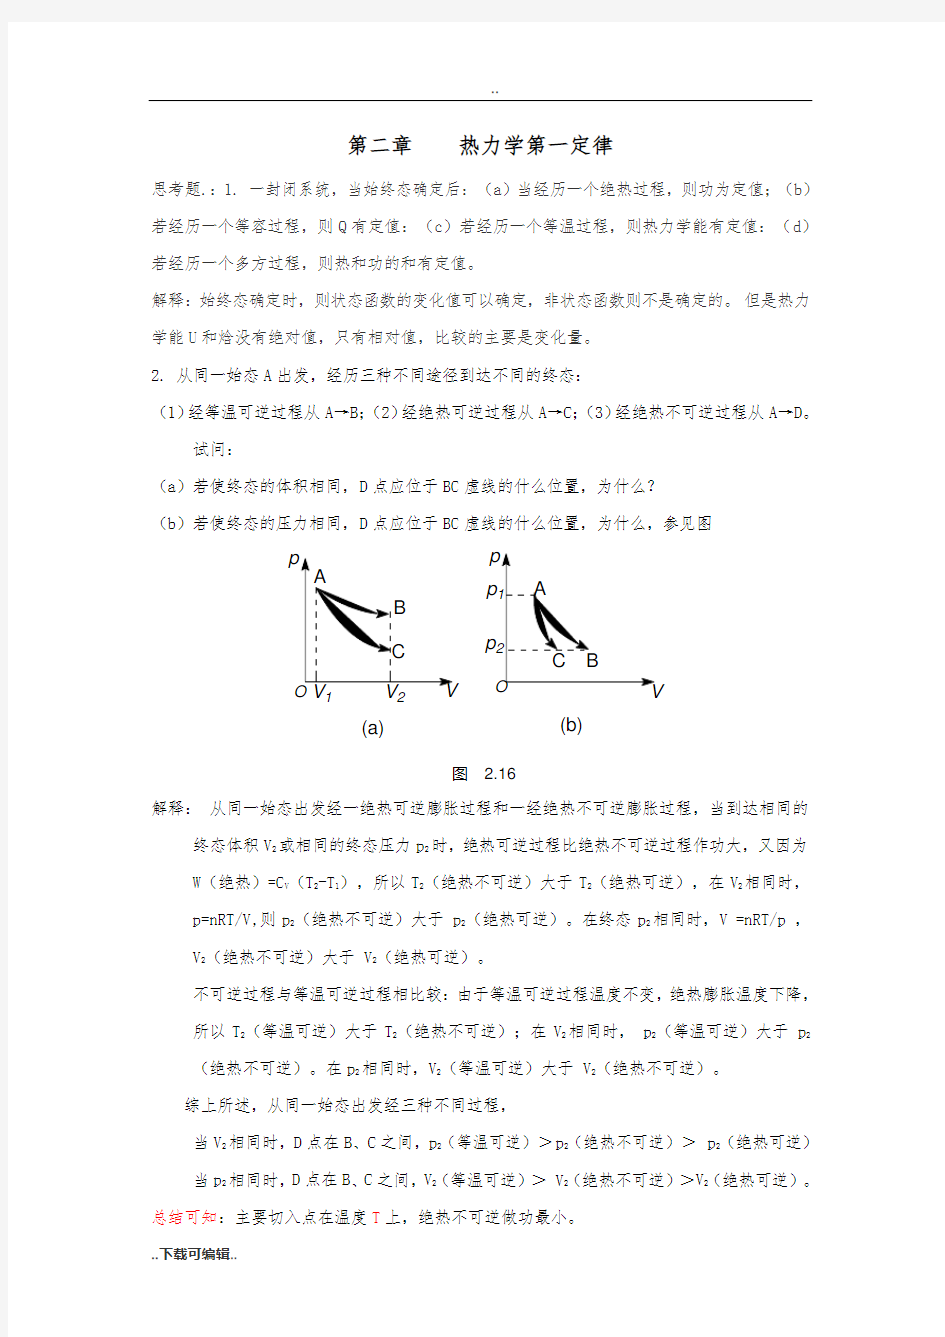 物理化学_傅献彩_(上册)习题答案